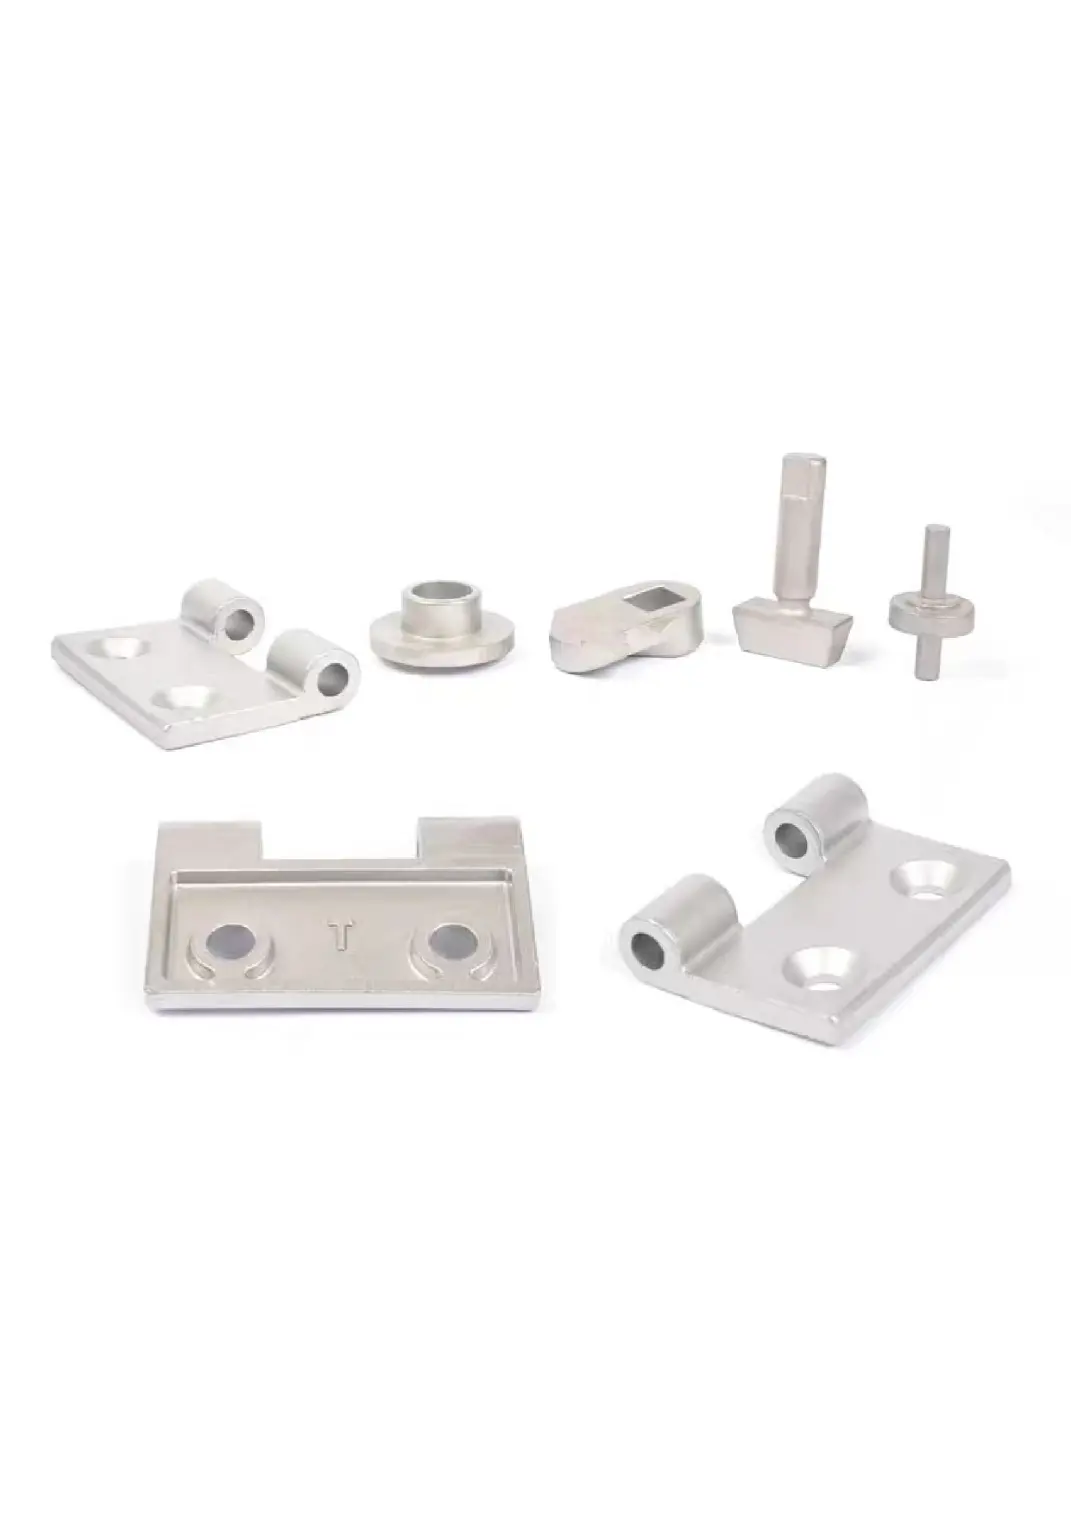 Piezas de metal OEM de fábrica, moldes de fundición de metal personalizados para fundición a presión, piezas de aluminio para máquina